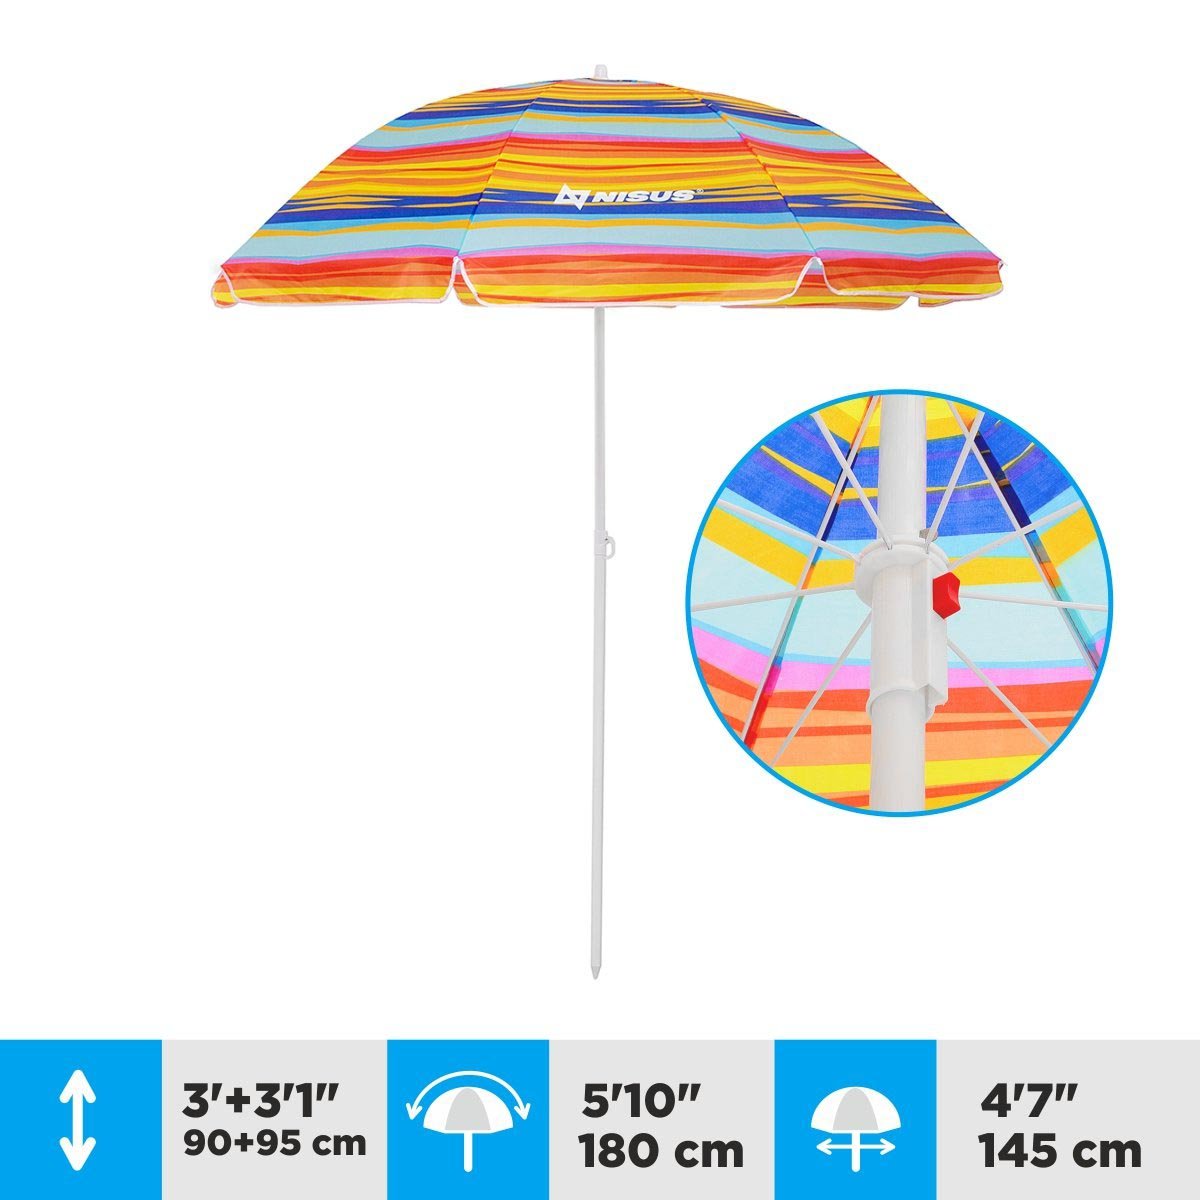 A 4.7 ft Bright Tilting Beach Umbrella is 6.1 ft high